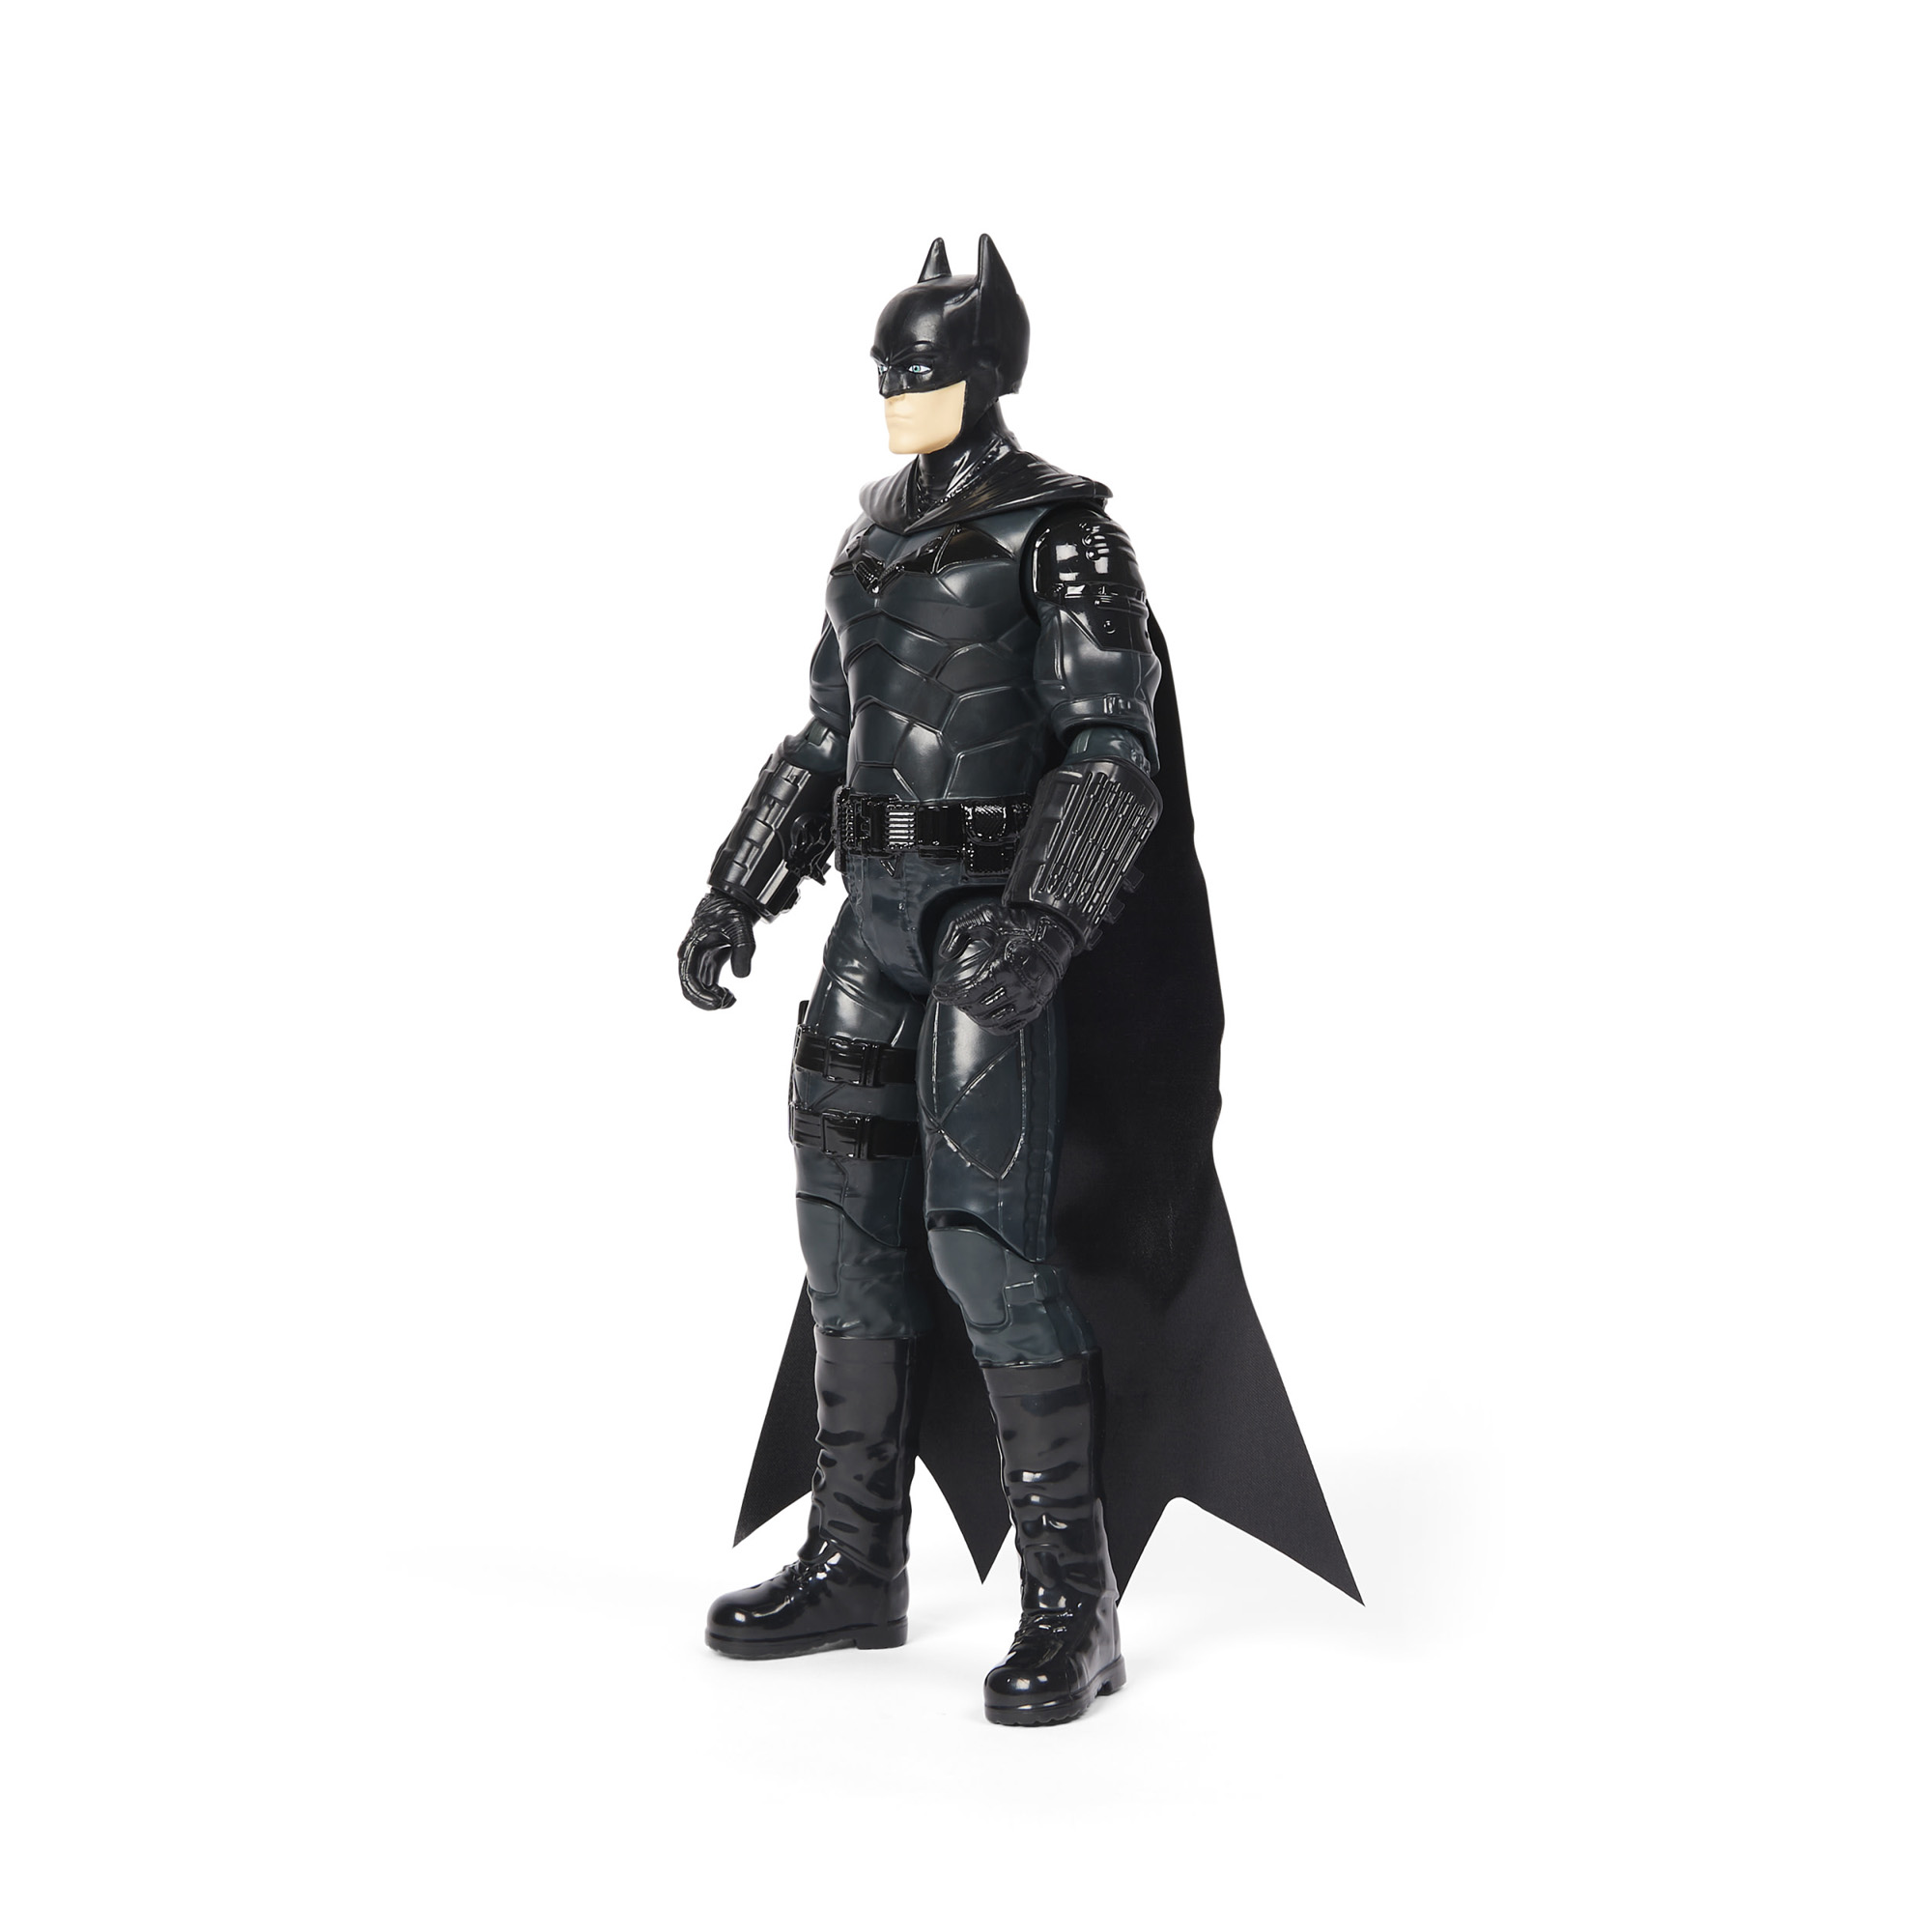 Personaggio del film The Batman da 30 cm, da collezione - DC Comics